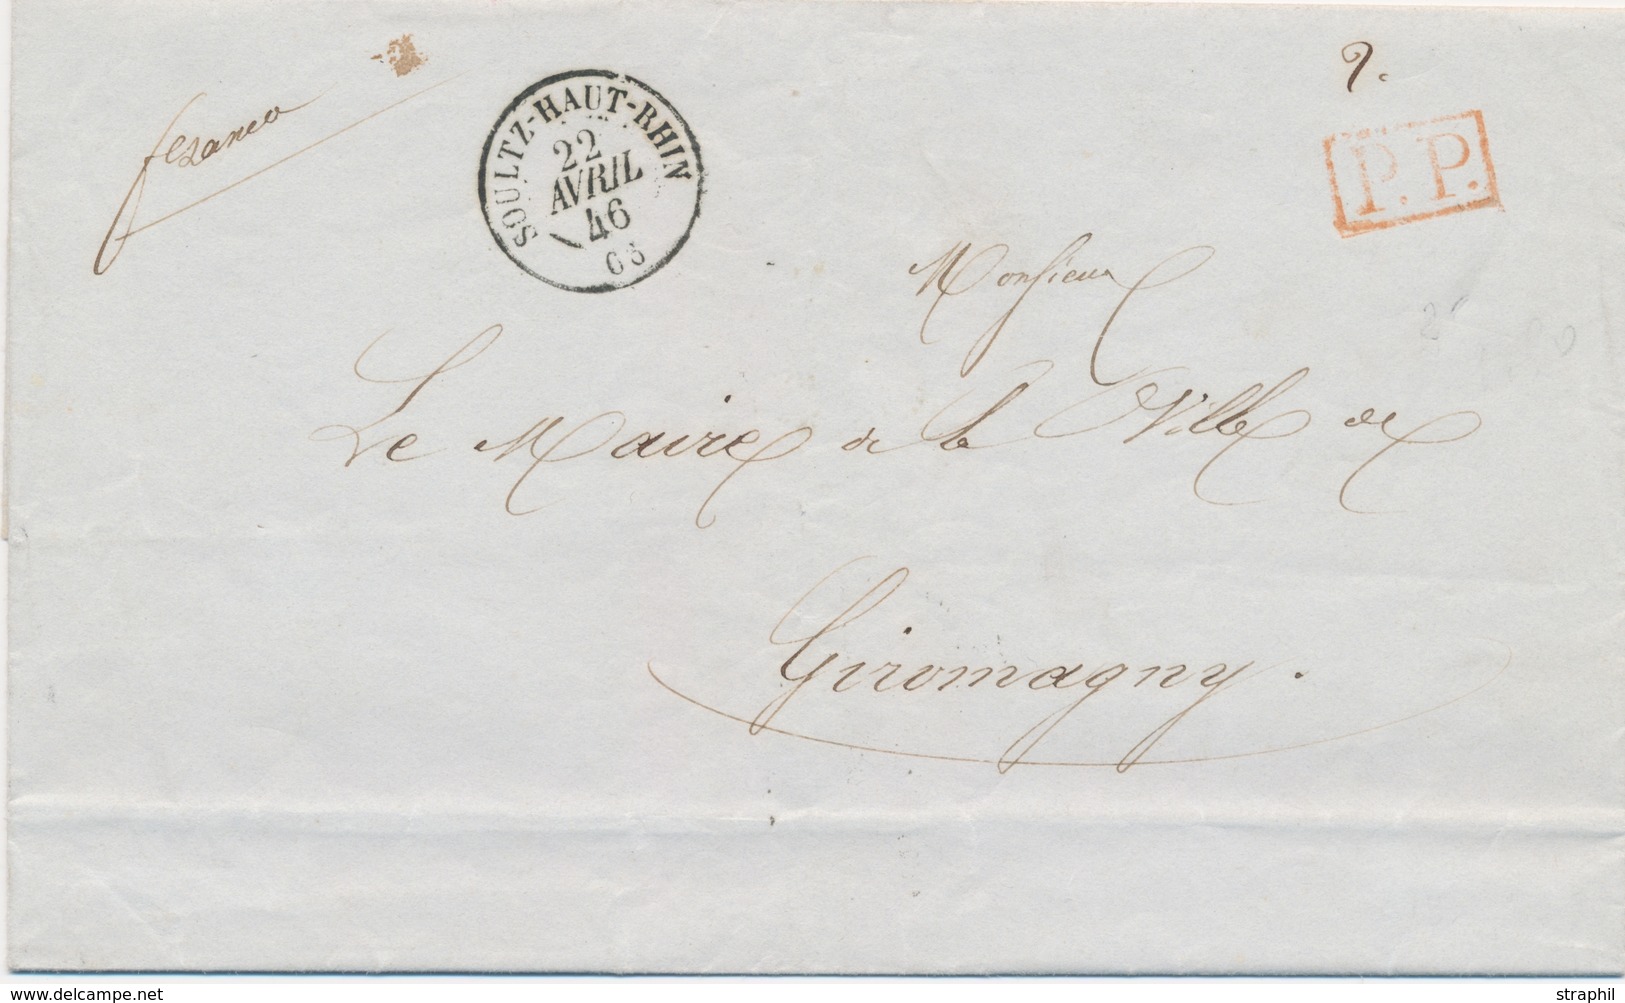 LAC M. POSTALES 19ème Siècle - HAUT-RHIN (Dépt 66) - LAC - Pli En PP -obl. #Soultz Haut-Rhin# - 22/4/1846 - Pour Giromag - Briefe U. Dokumente